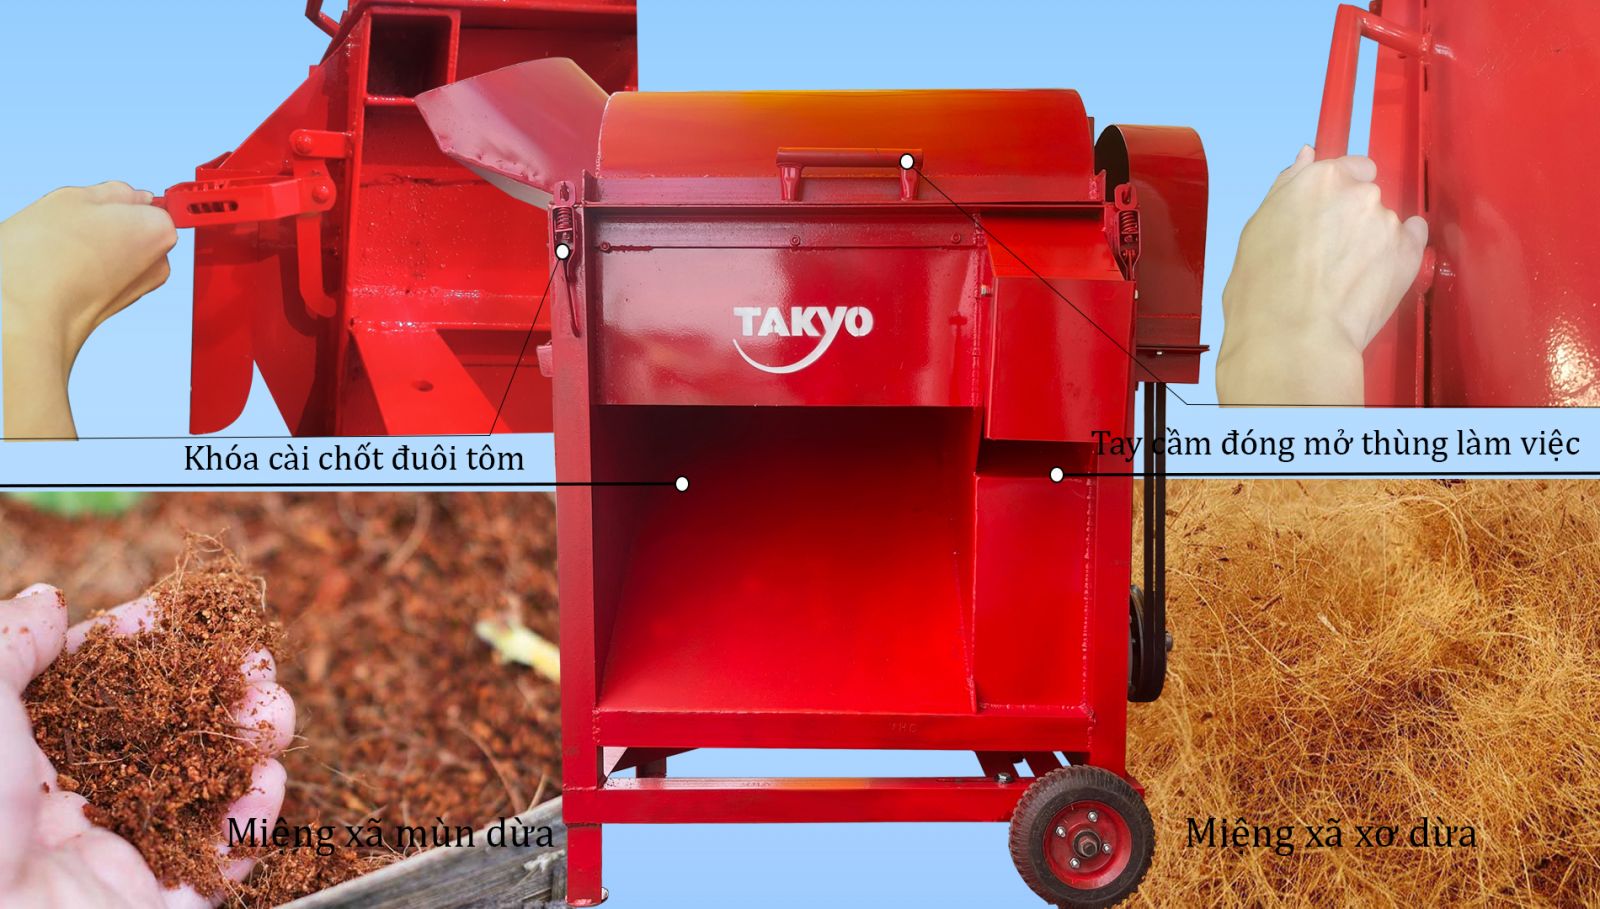 Năng suất hoạt động máy băm xơ dừa Takyo TK550